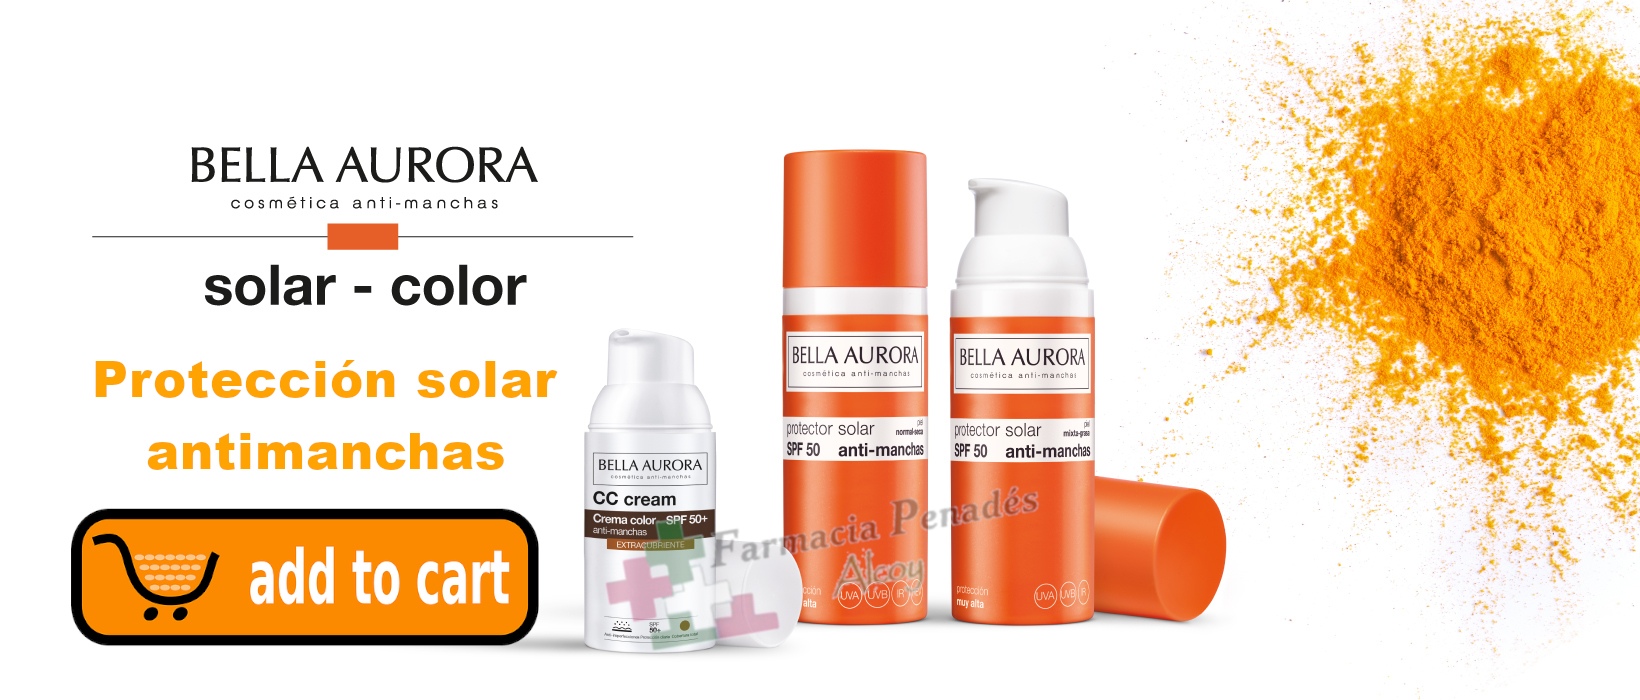 Protección solar antimanchas Bella Aurora en farmaciapenadesalcoy